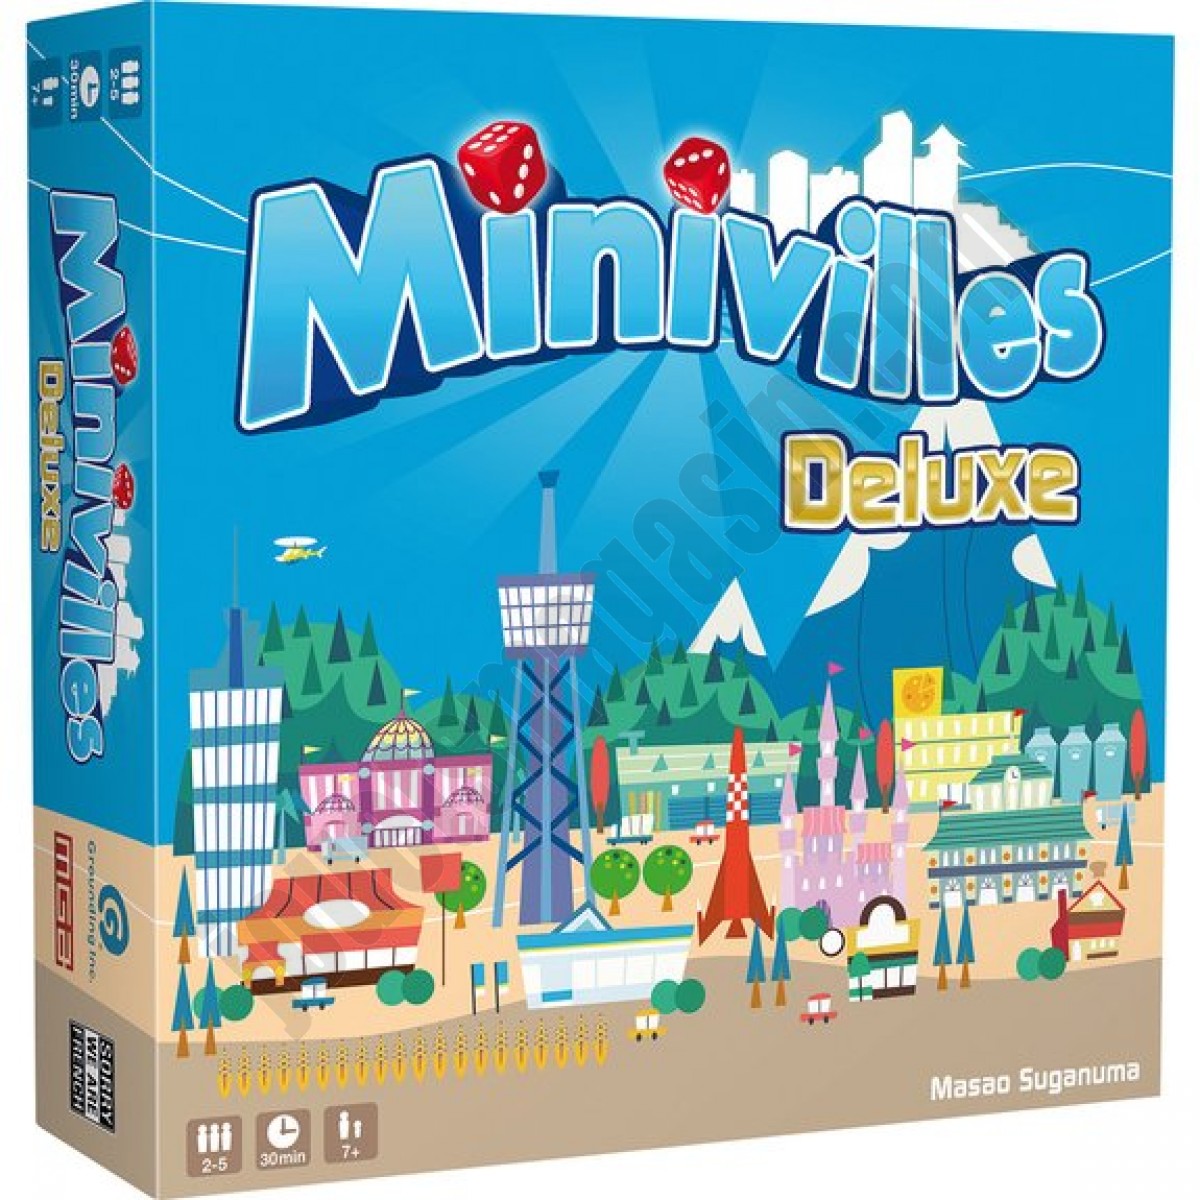 Minivilles Deluxe ◆◆◆ Nouveau - Minivilles Deluxe ◆◆◆ Nouveau